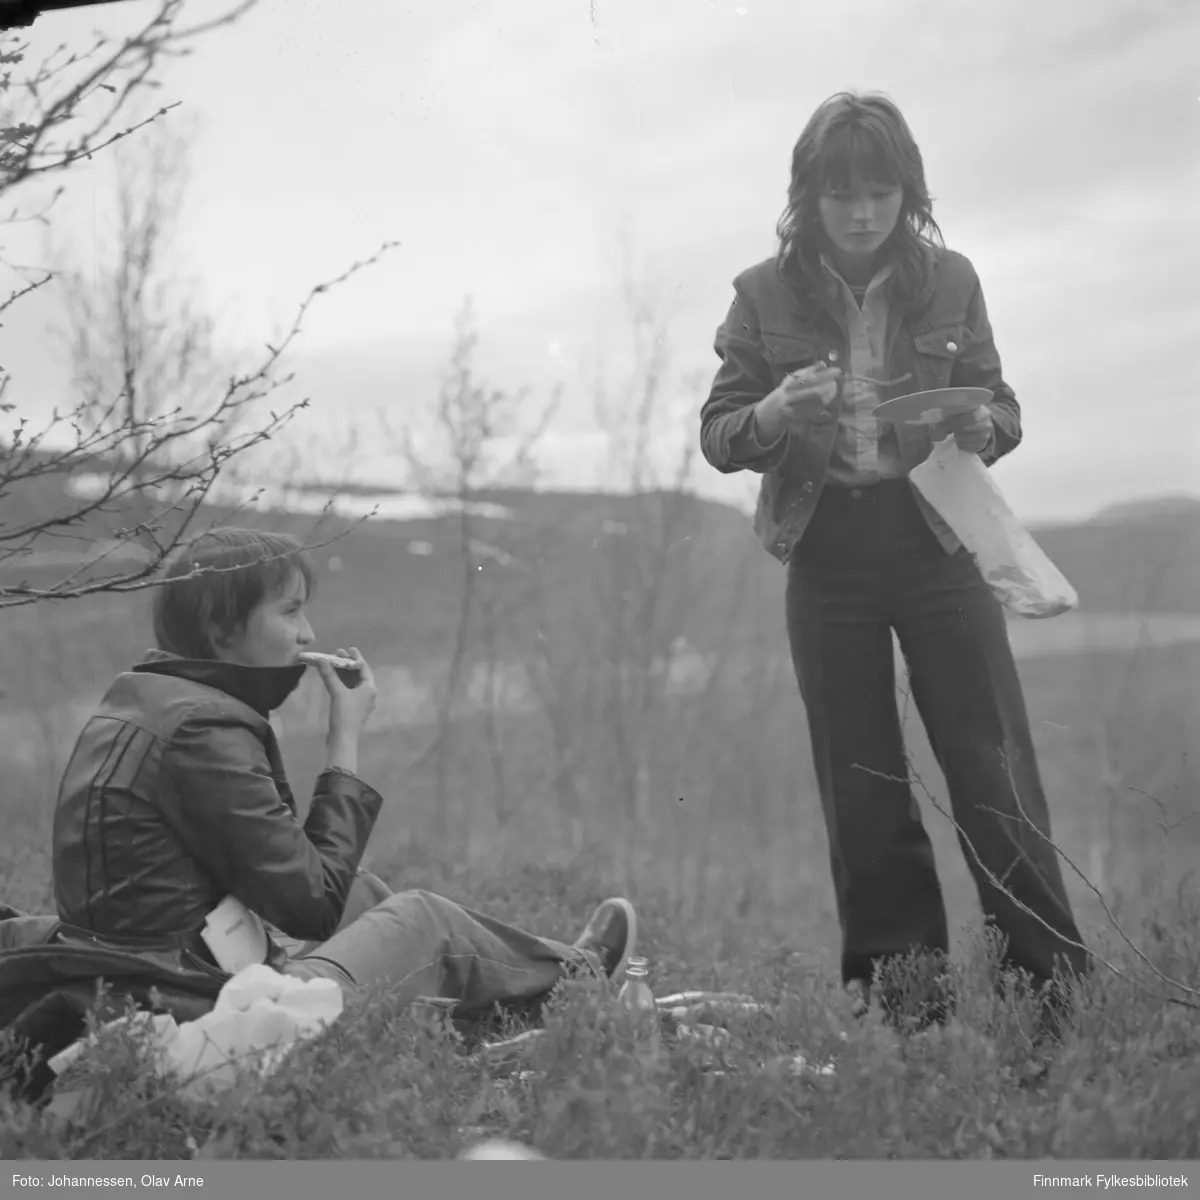 Ukjente ungdom på tur i Finnmark

To tenåringer spiser utendørs